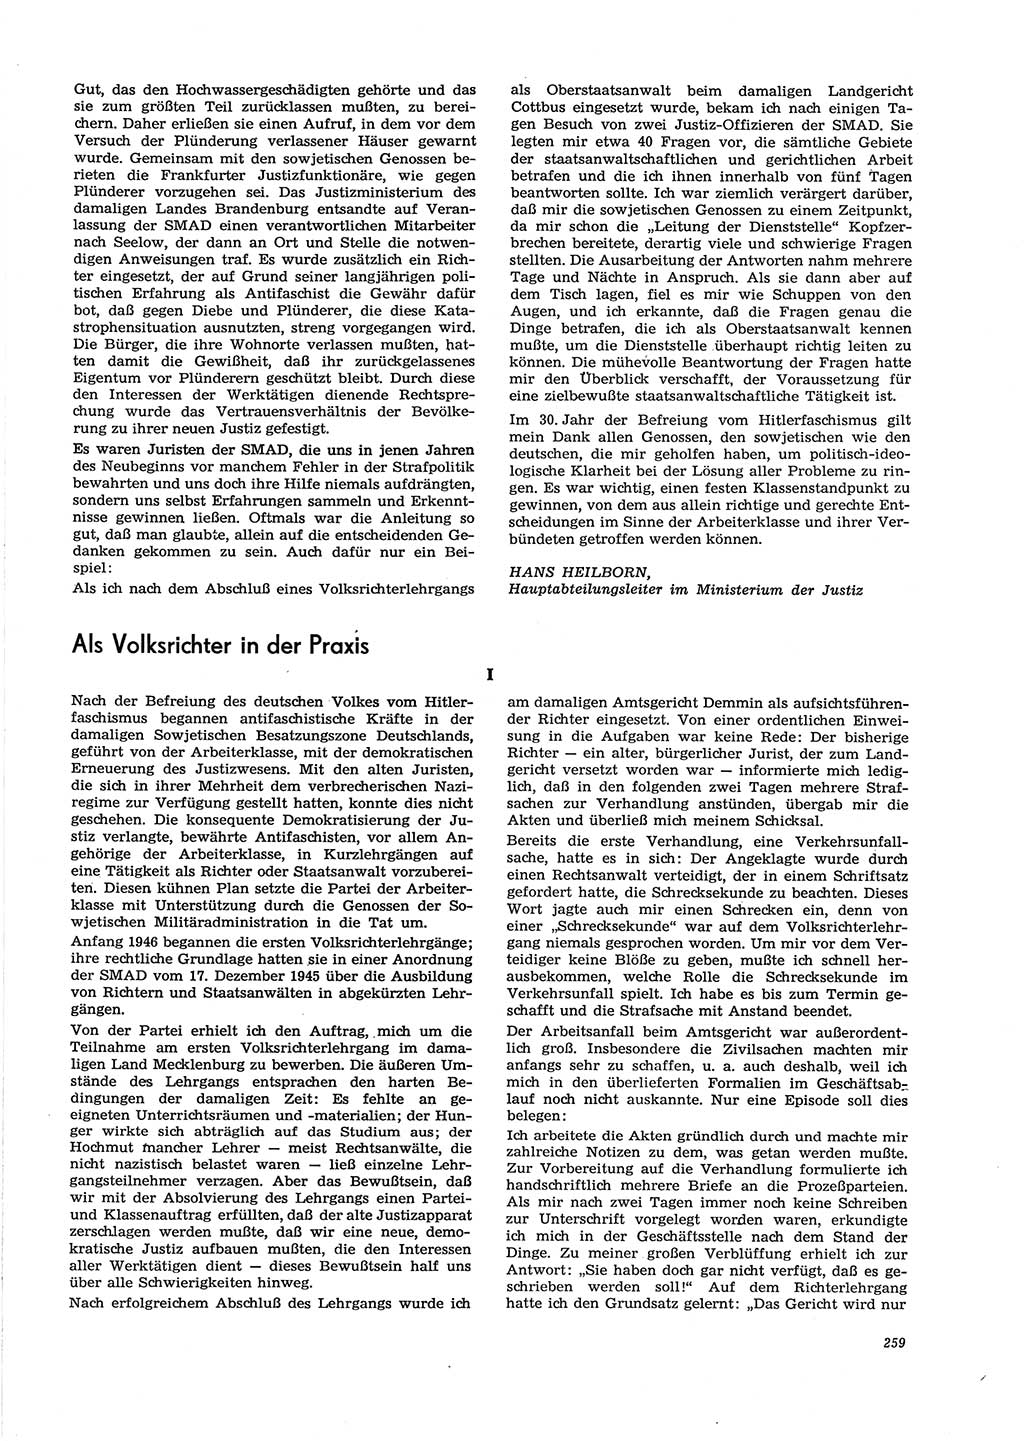 Neue Justiz (NJ), Zeitschrift für Recht und Rechtswissenschaft [Deutsche Demokratische Republik (DDR)], 29. Jahrgang 1975, Seite 259 (NJ DDR 1975, S. 259)